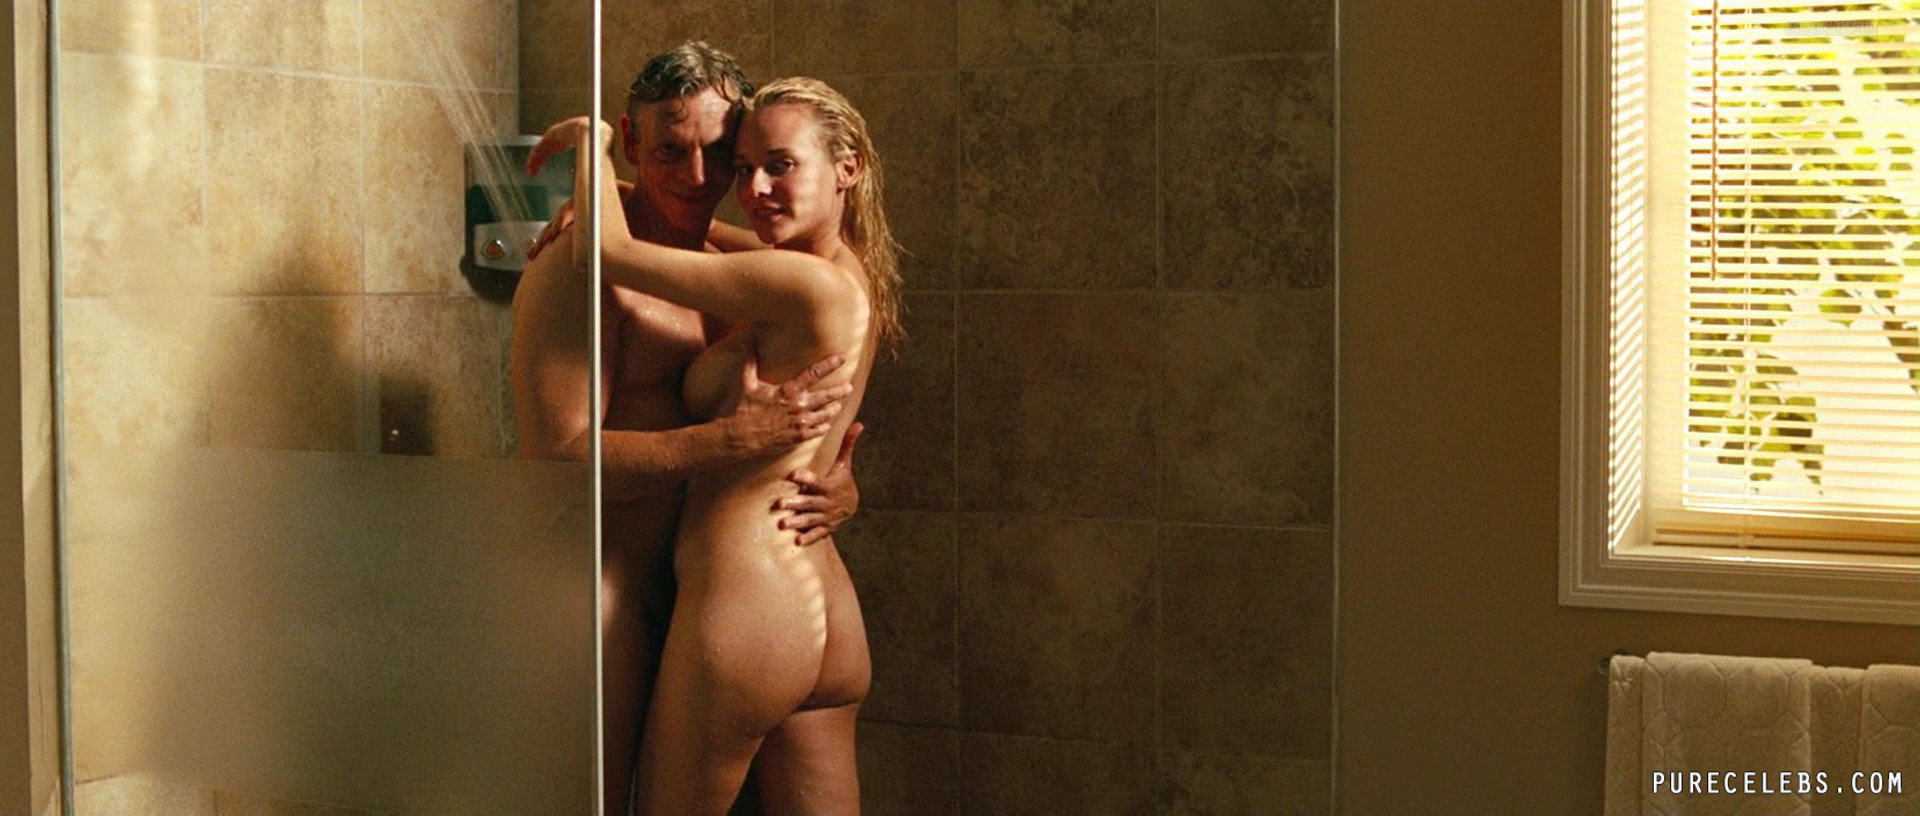 brenda amundson recommends Diane Kruger Naked Photos